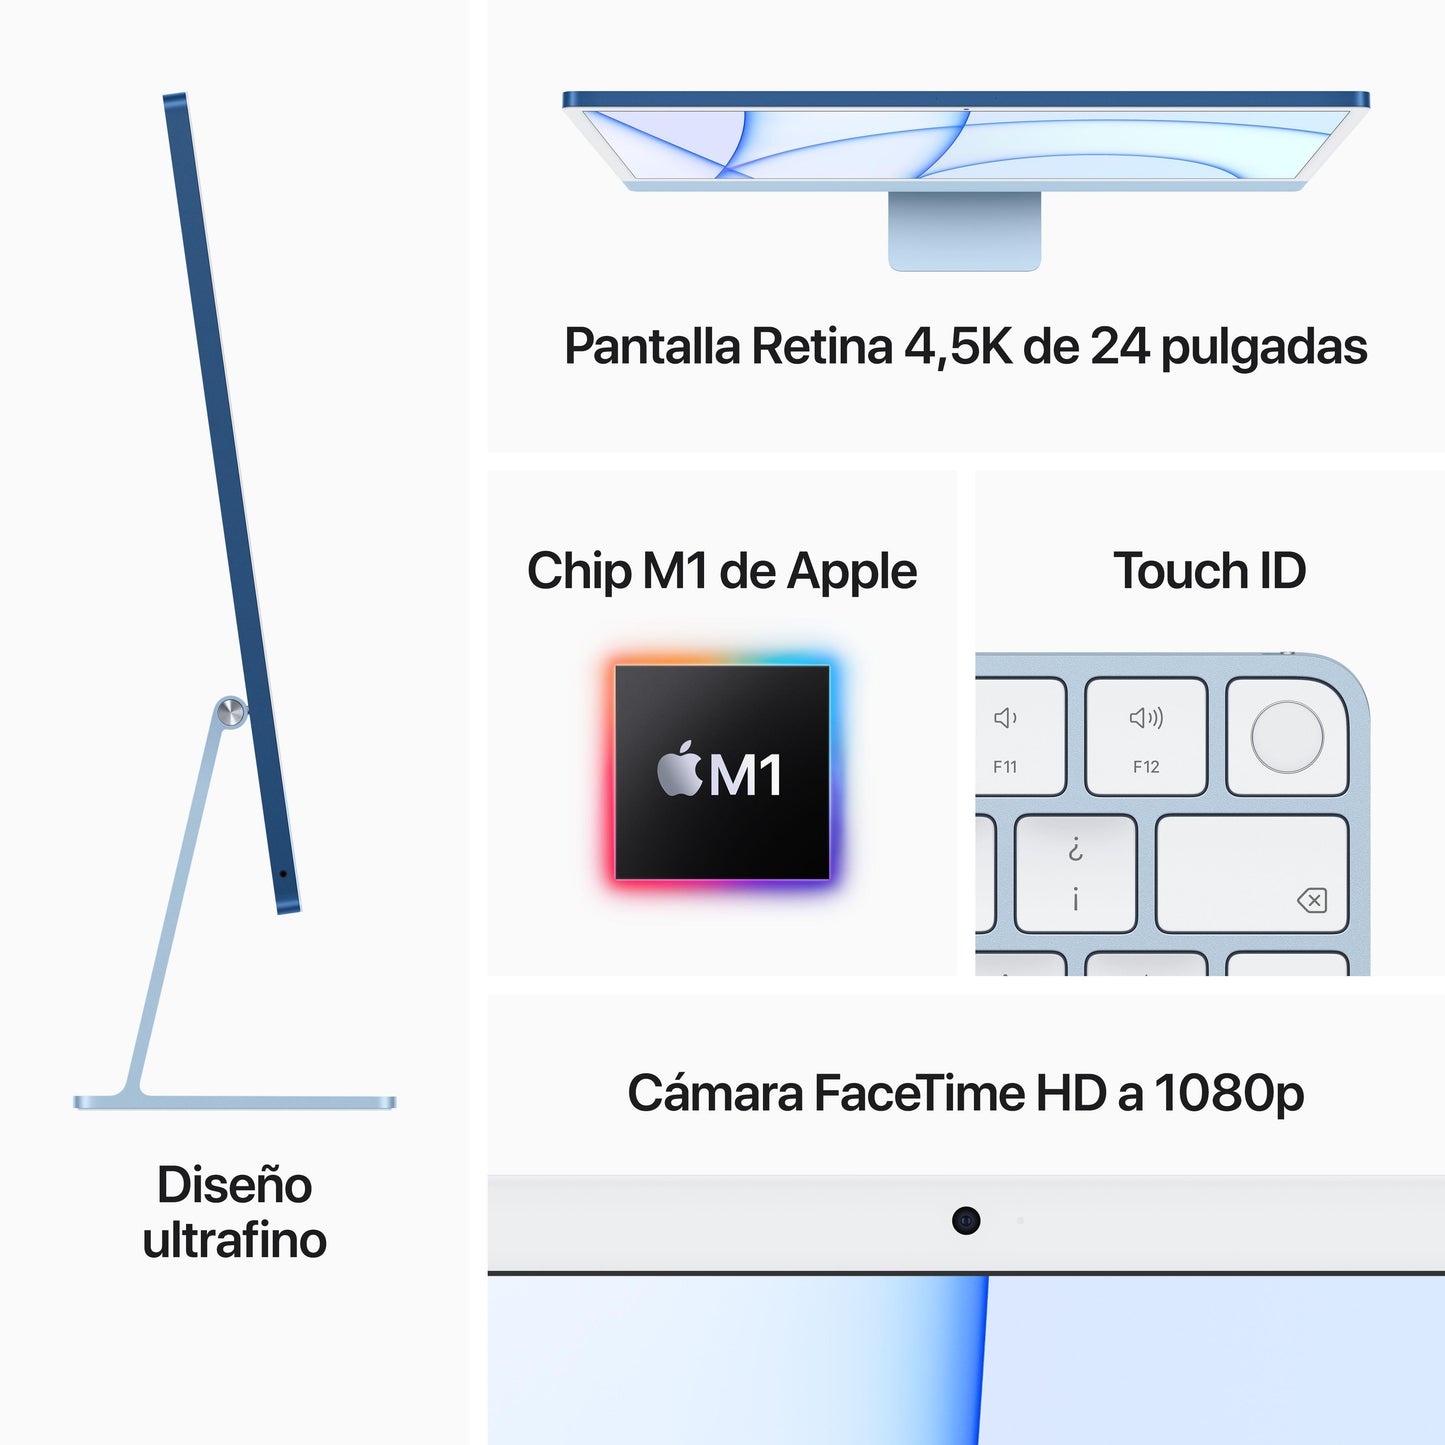 iMac con pantalla Retina 4,5K de 24 pulgadas: Chip M1 de Apple con CPU de ocho núcleos y GPU de ocho núcleos, 512 GB SSD - Verde - Rossellimac